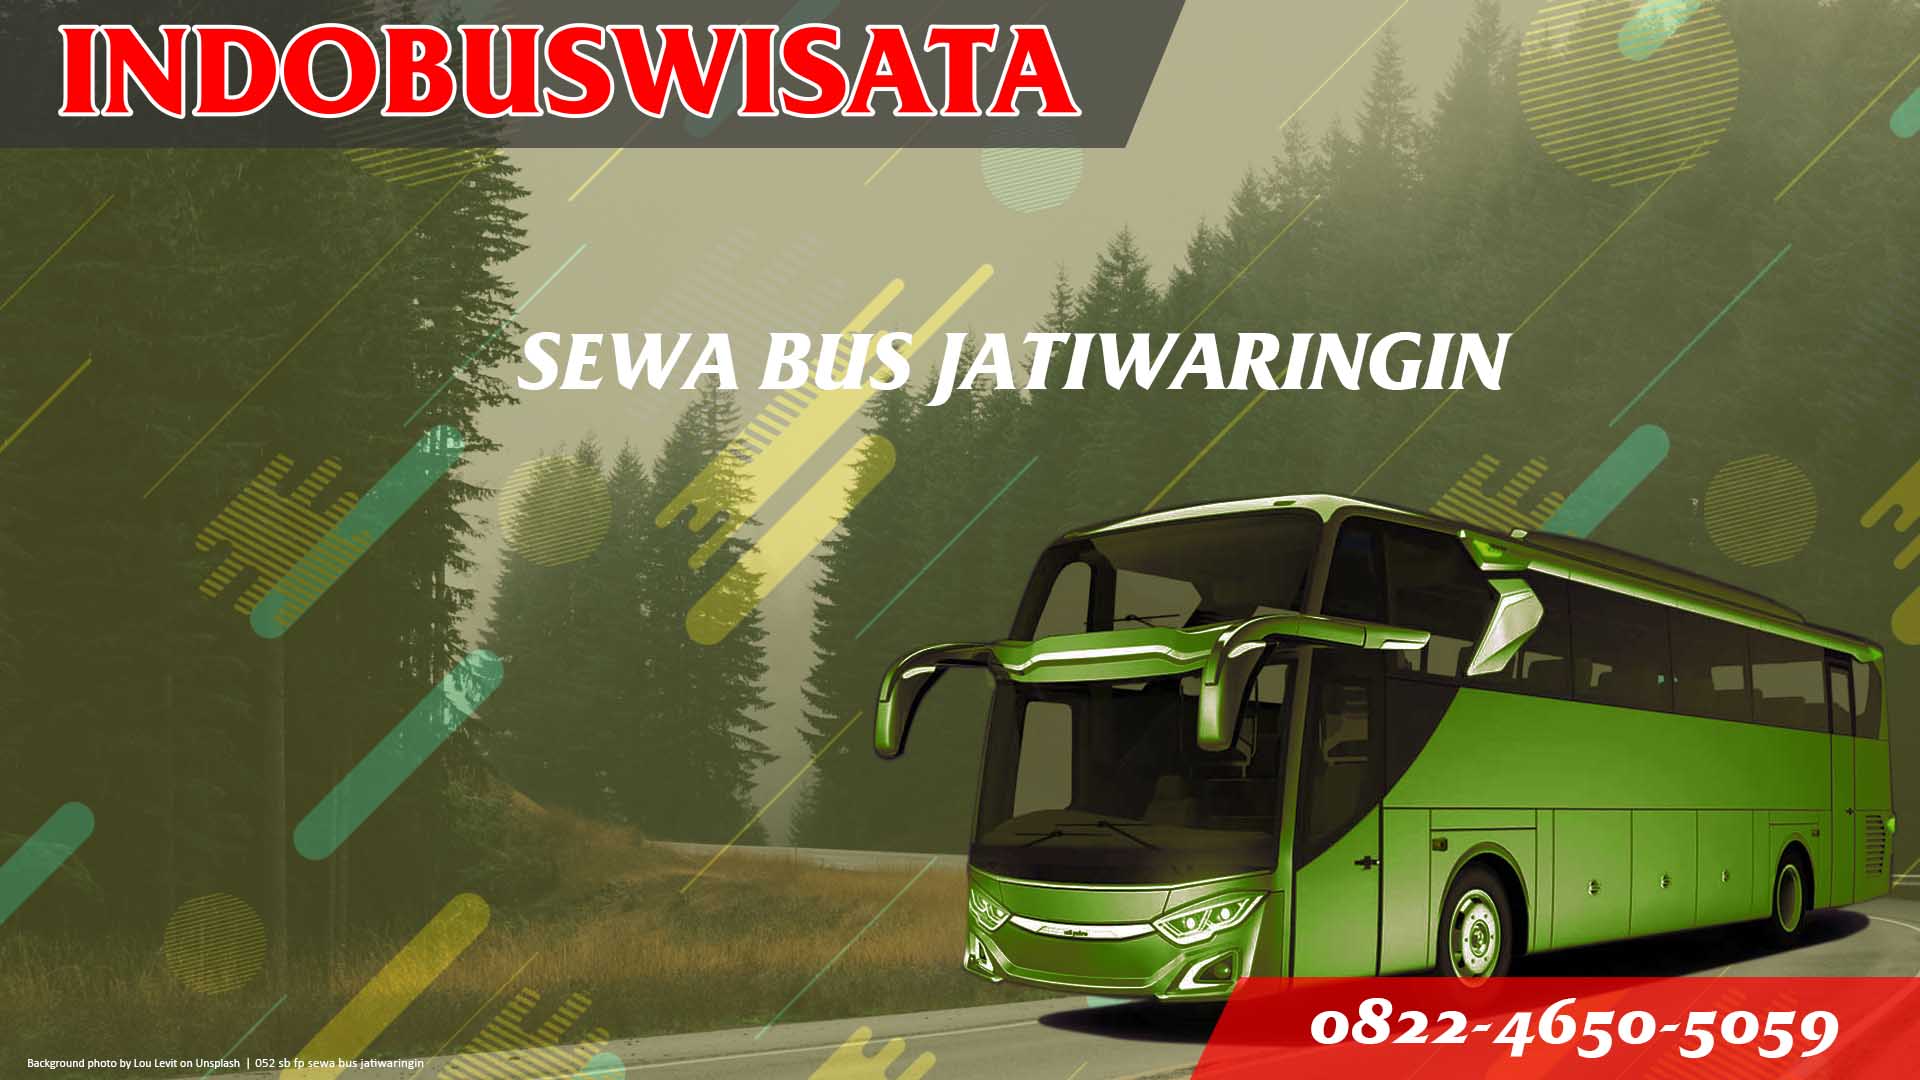 052 Sb Fp Sewa Bus Jatiwaringin Jb 3 Hdd Indobuswisata